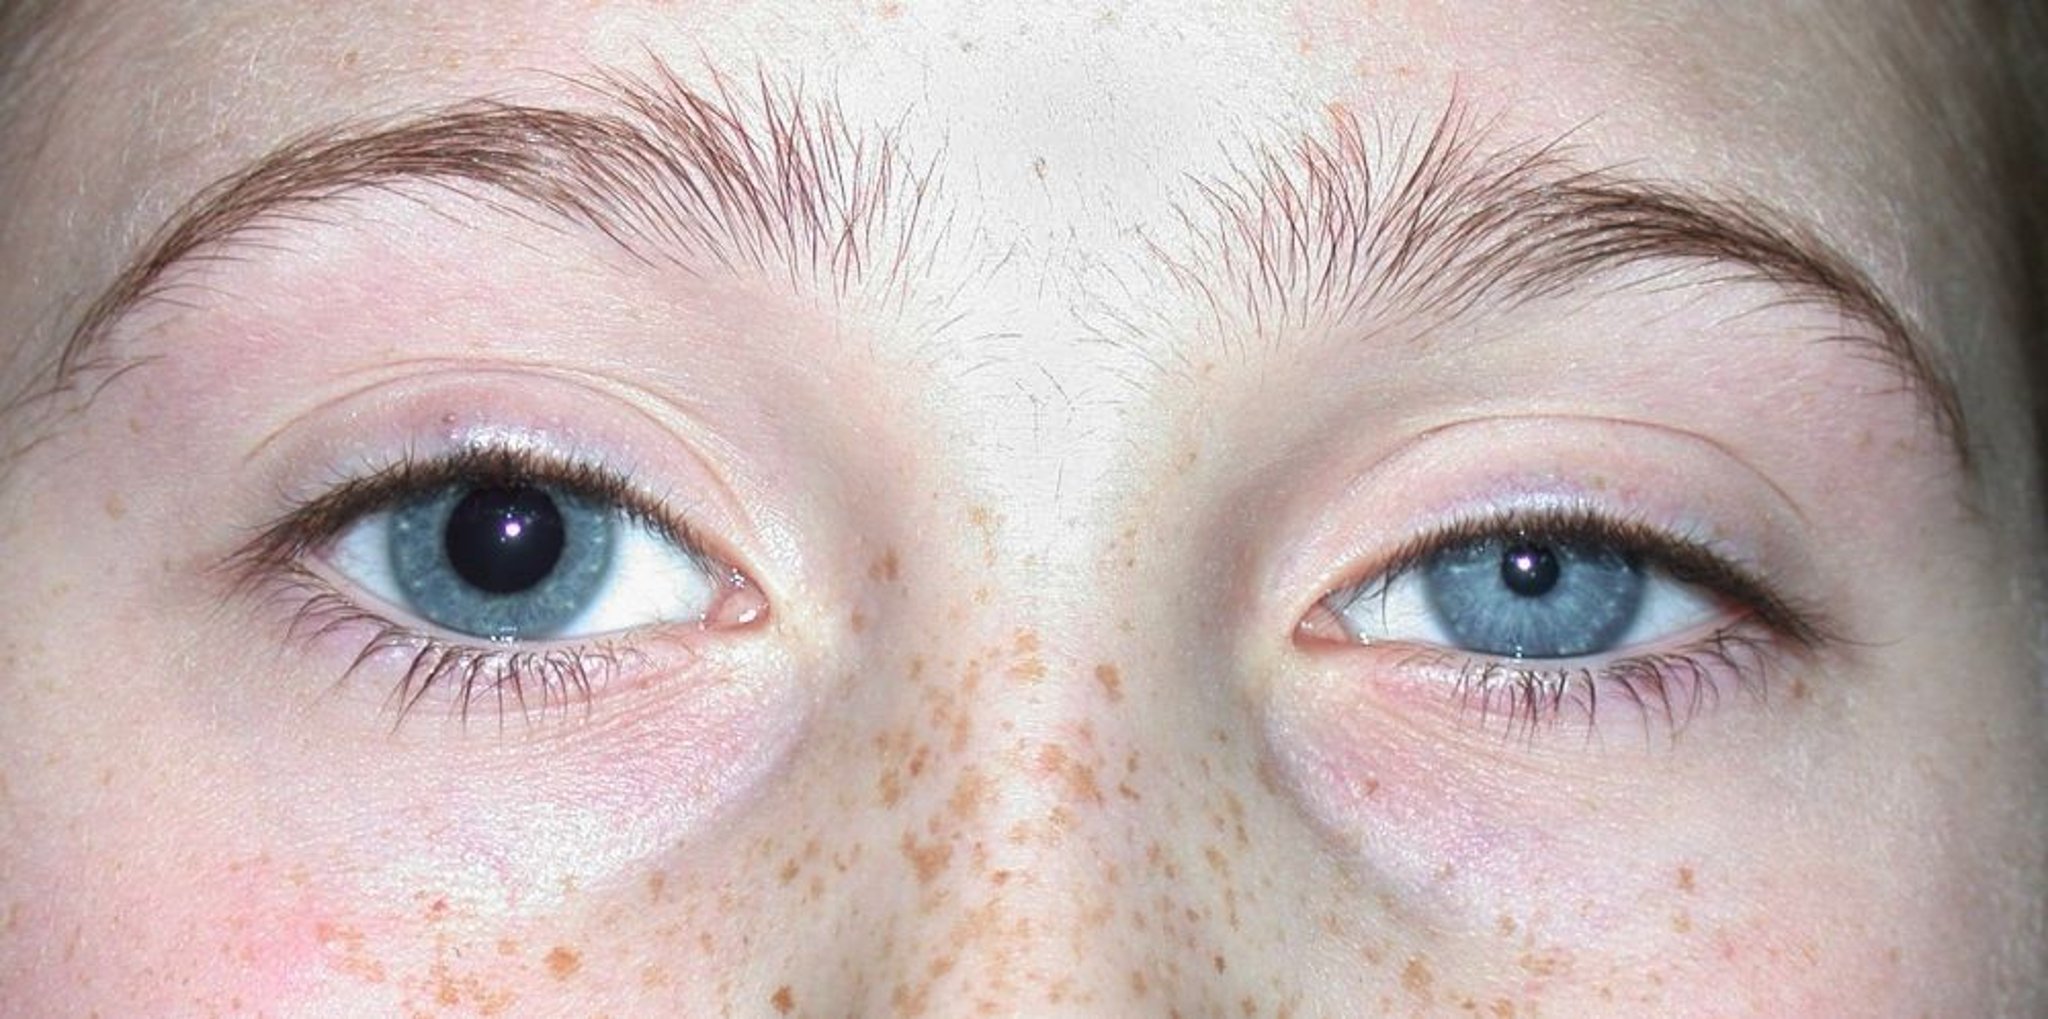 Pupilas desiguais (anisocoria)